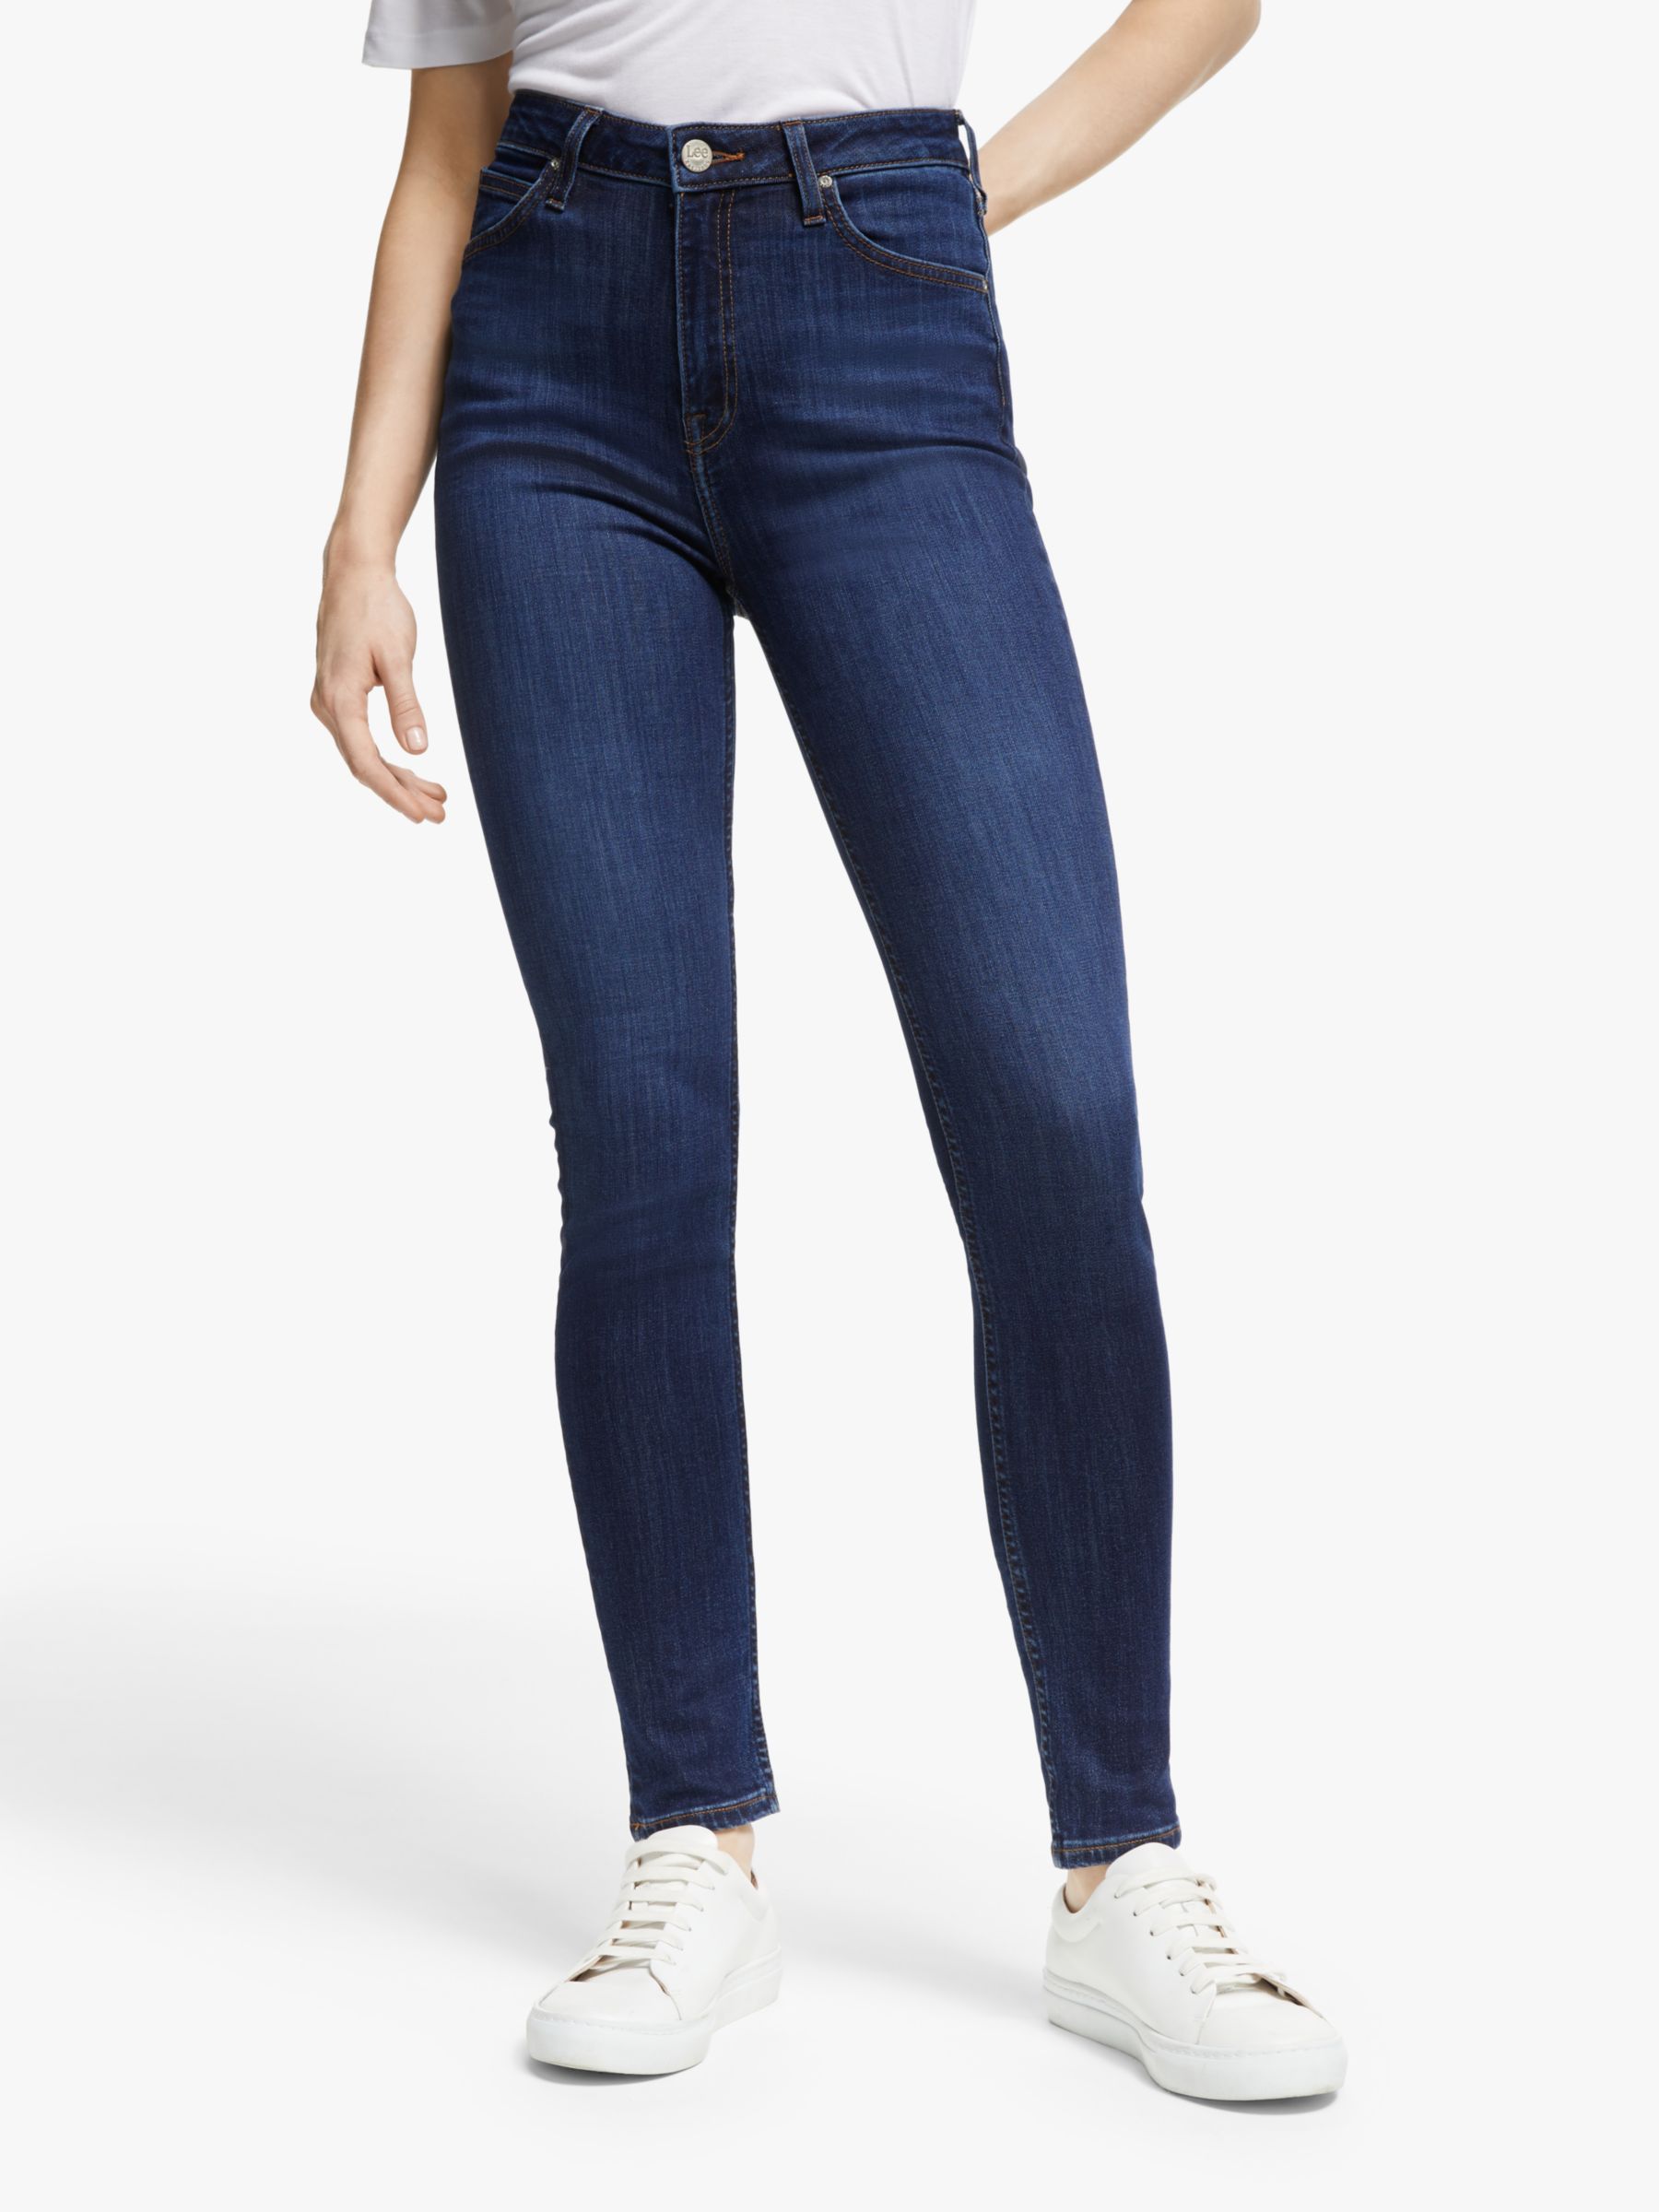 lee women's skinny jeans